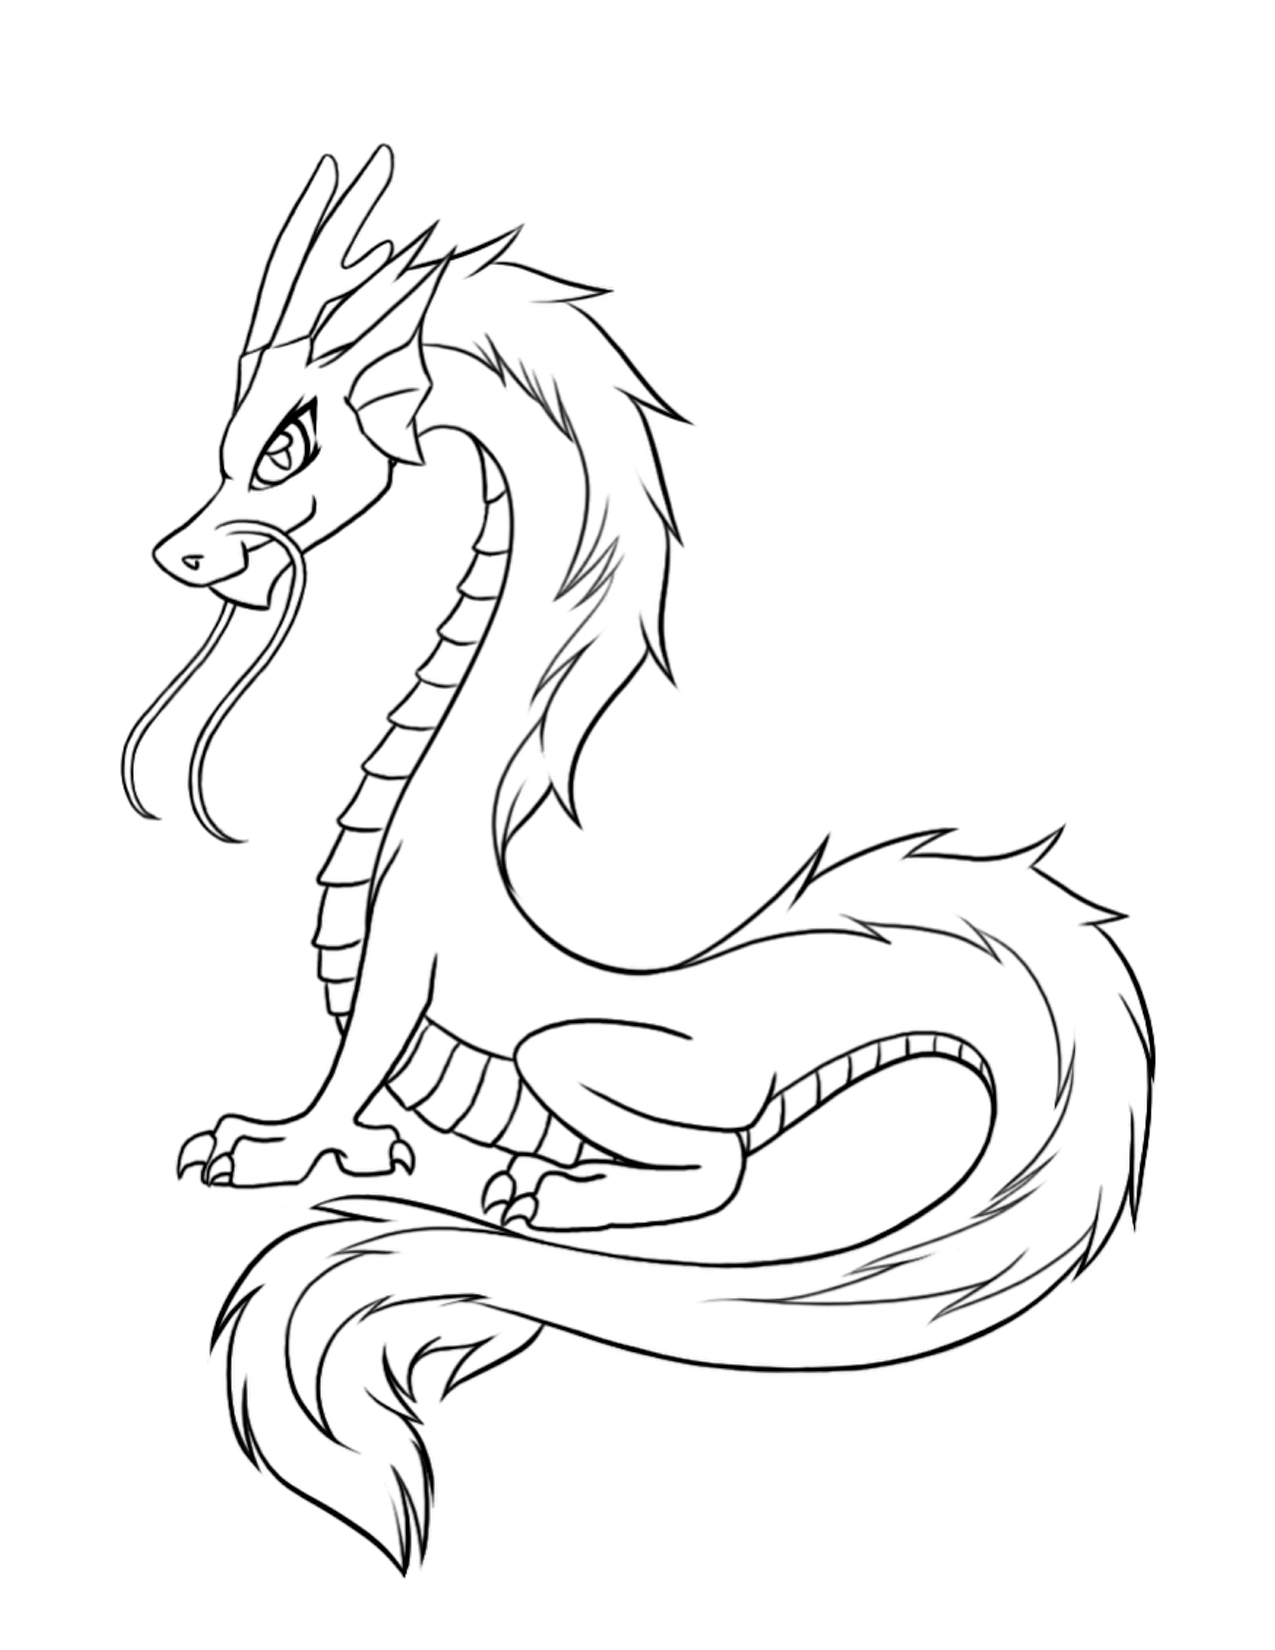 Dragon Kanji Drawing Image